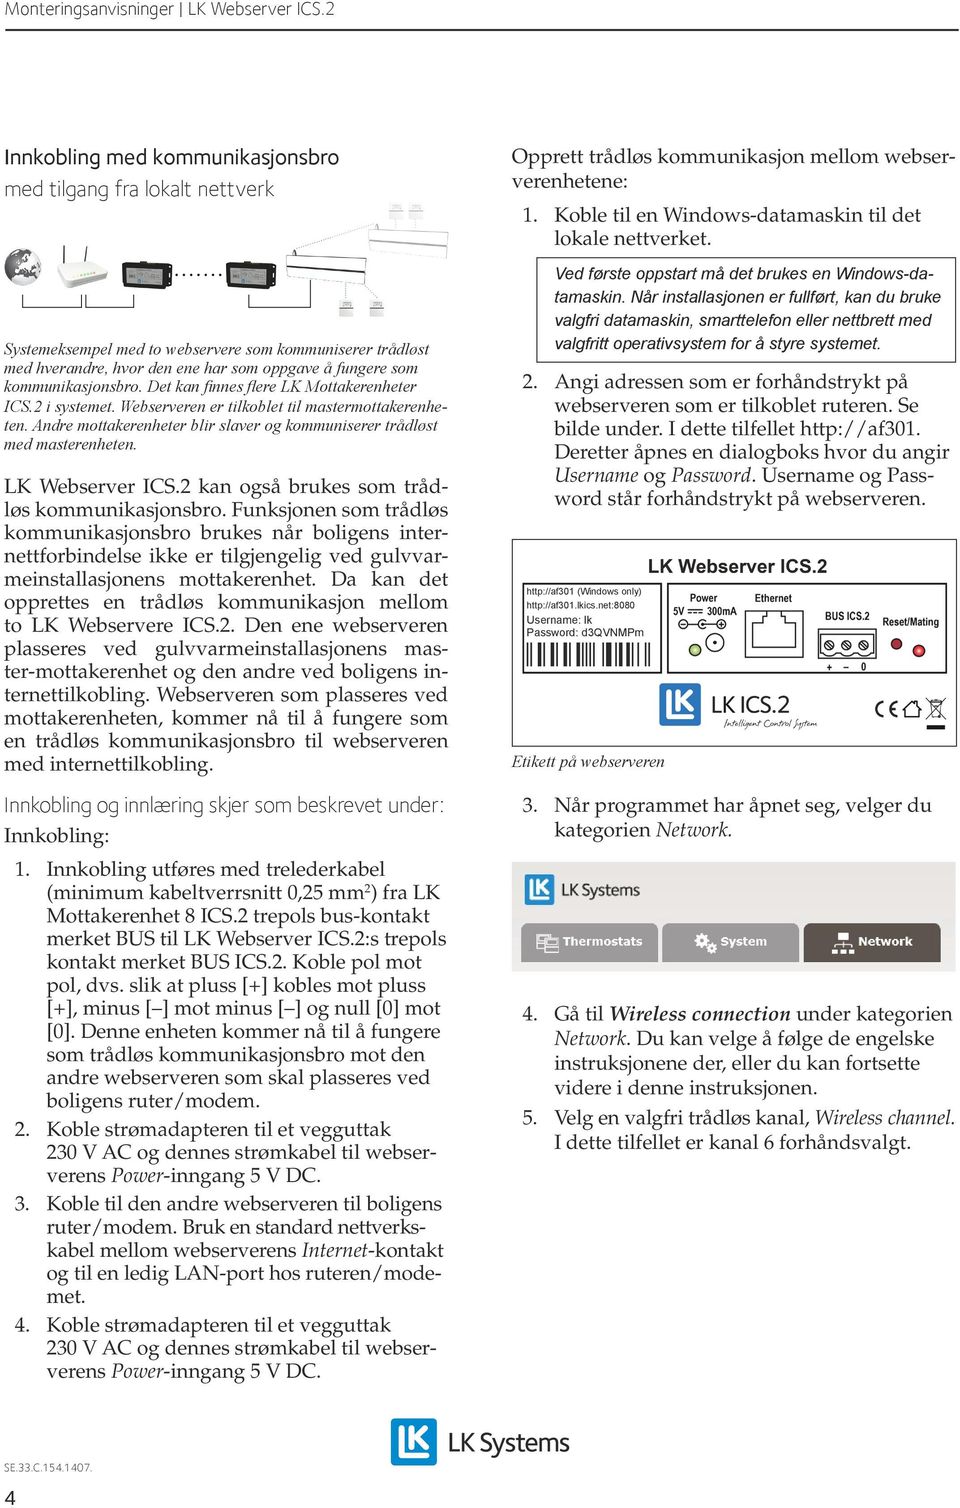 LK Webserver ICS.2 kan også brukes som trådløs kommunikasjonsbro.